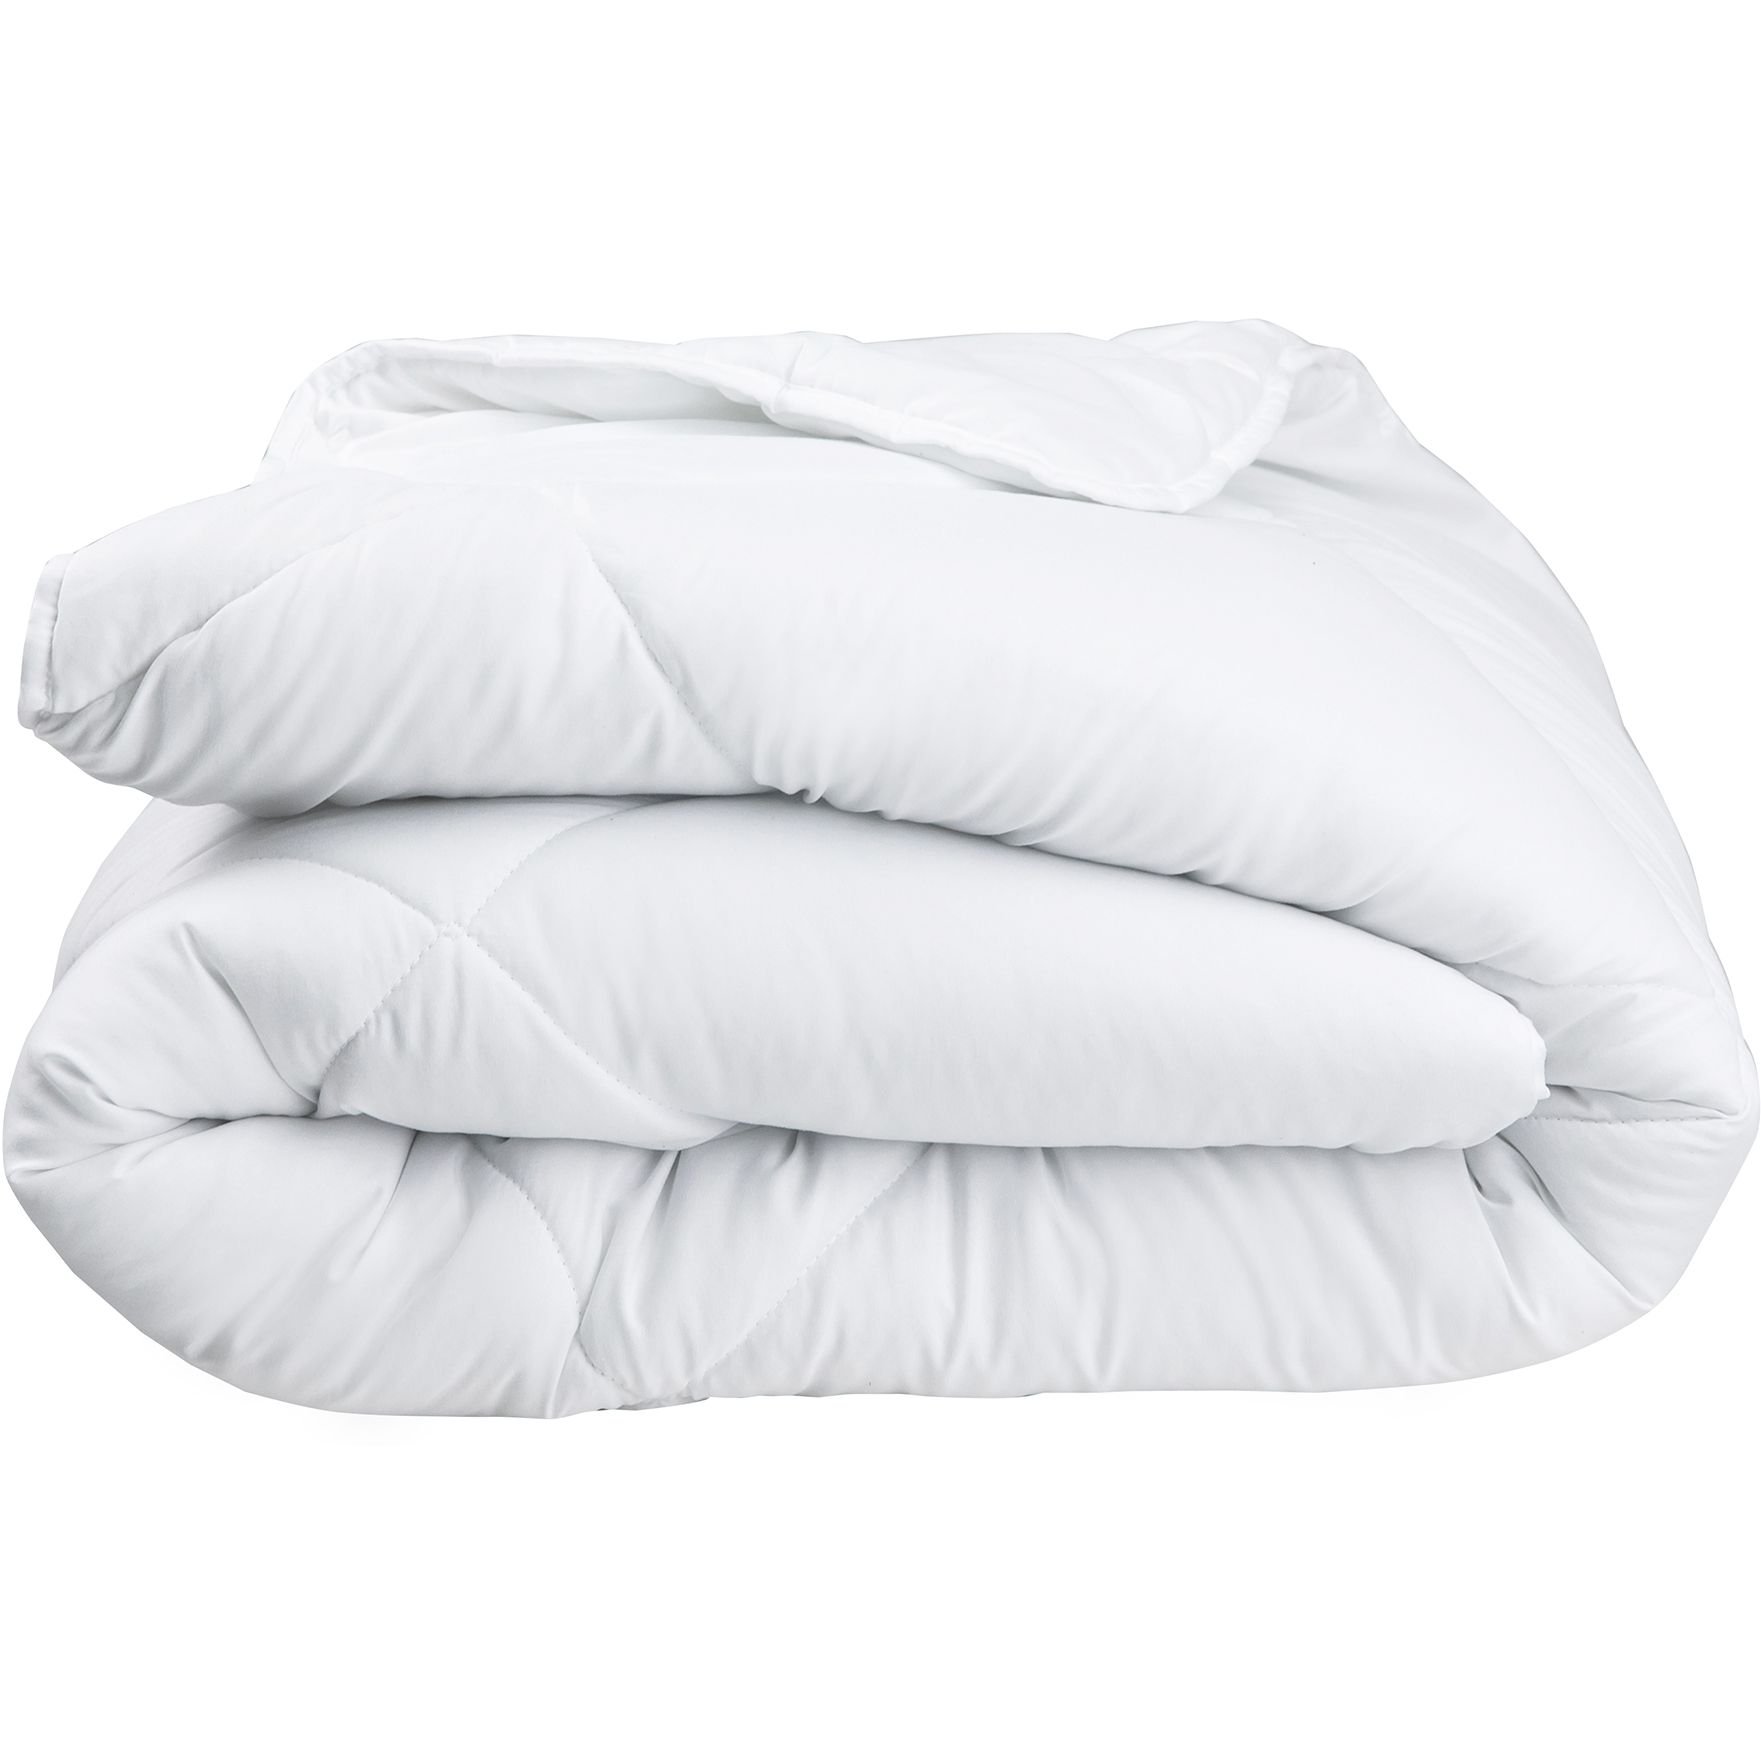 Одеяло ТЕП White Home Comfort 200x220 белое (1-02803_00000) - фото 1